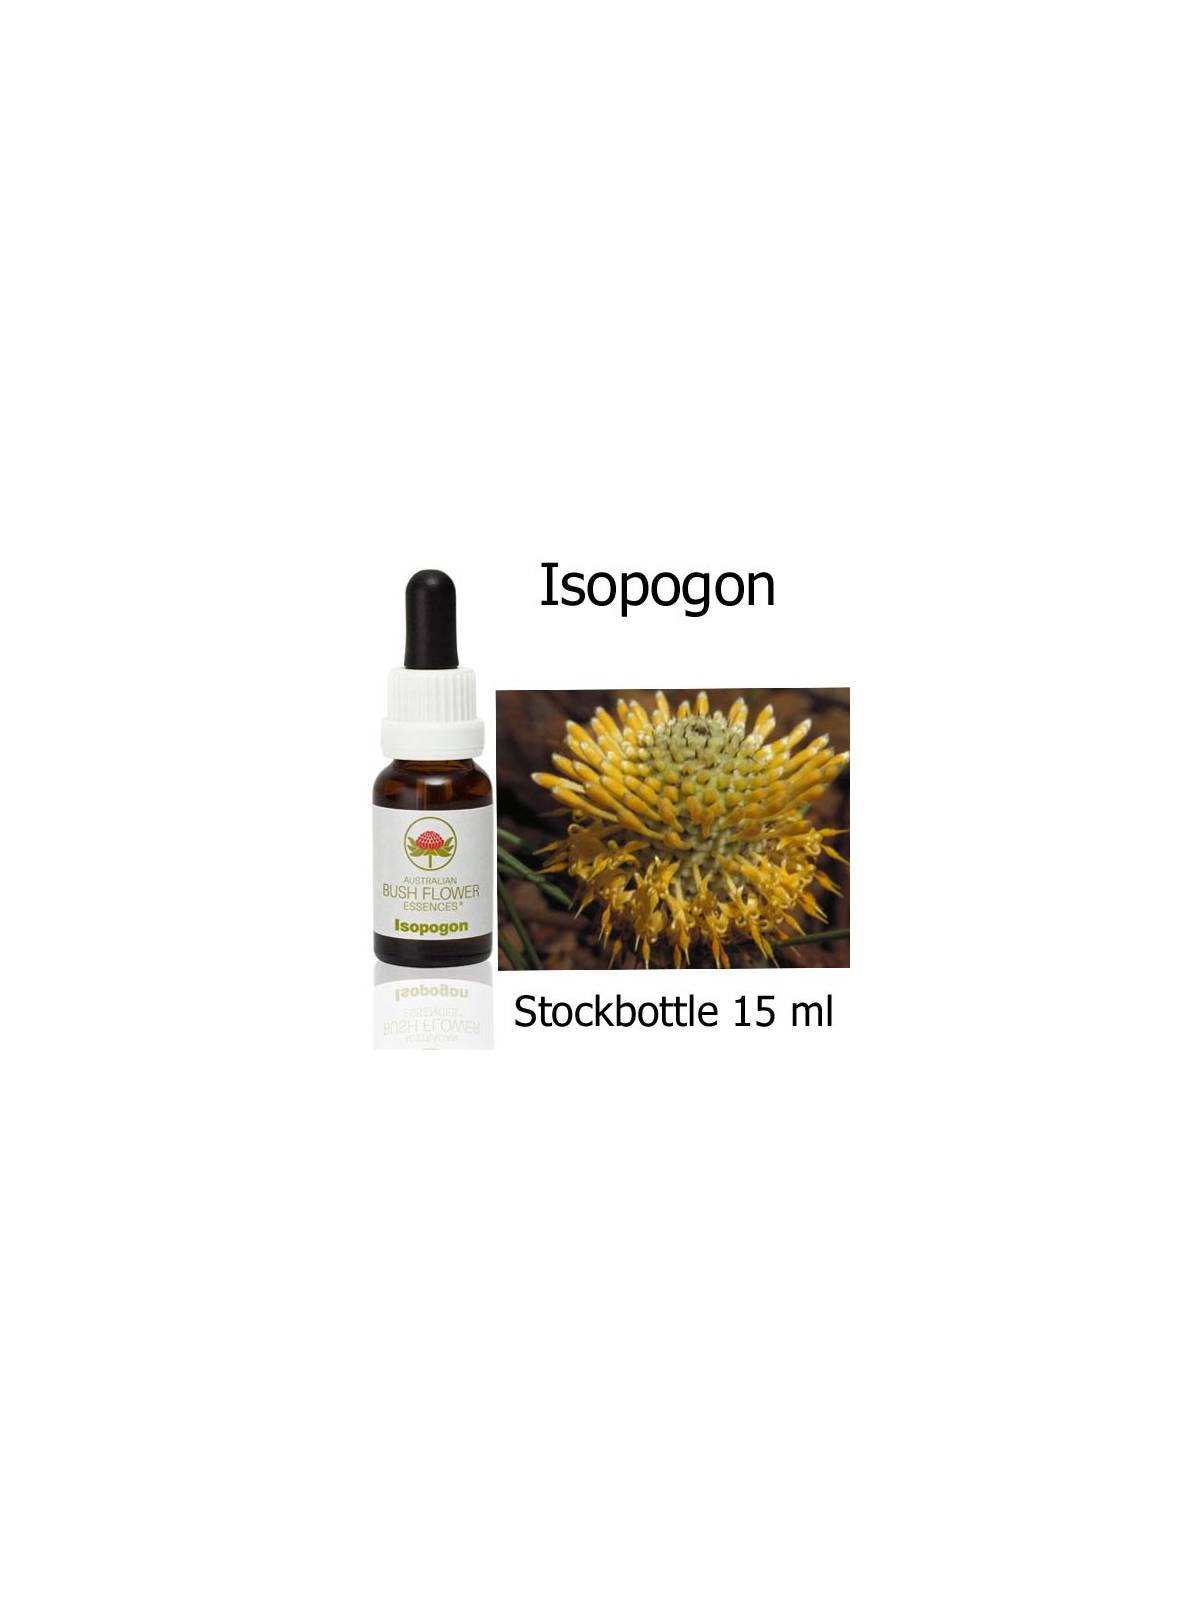 Isopogon Australian Bush Flower Essences stockbottles